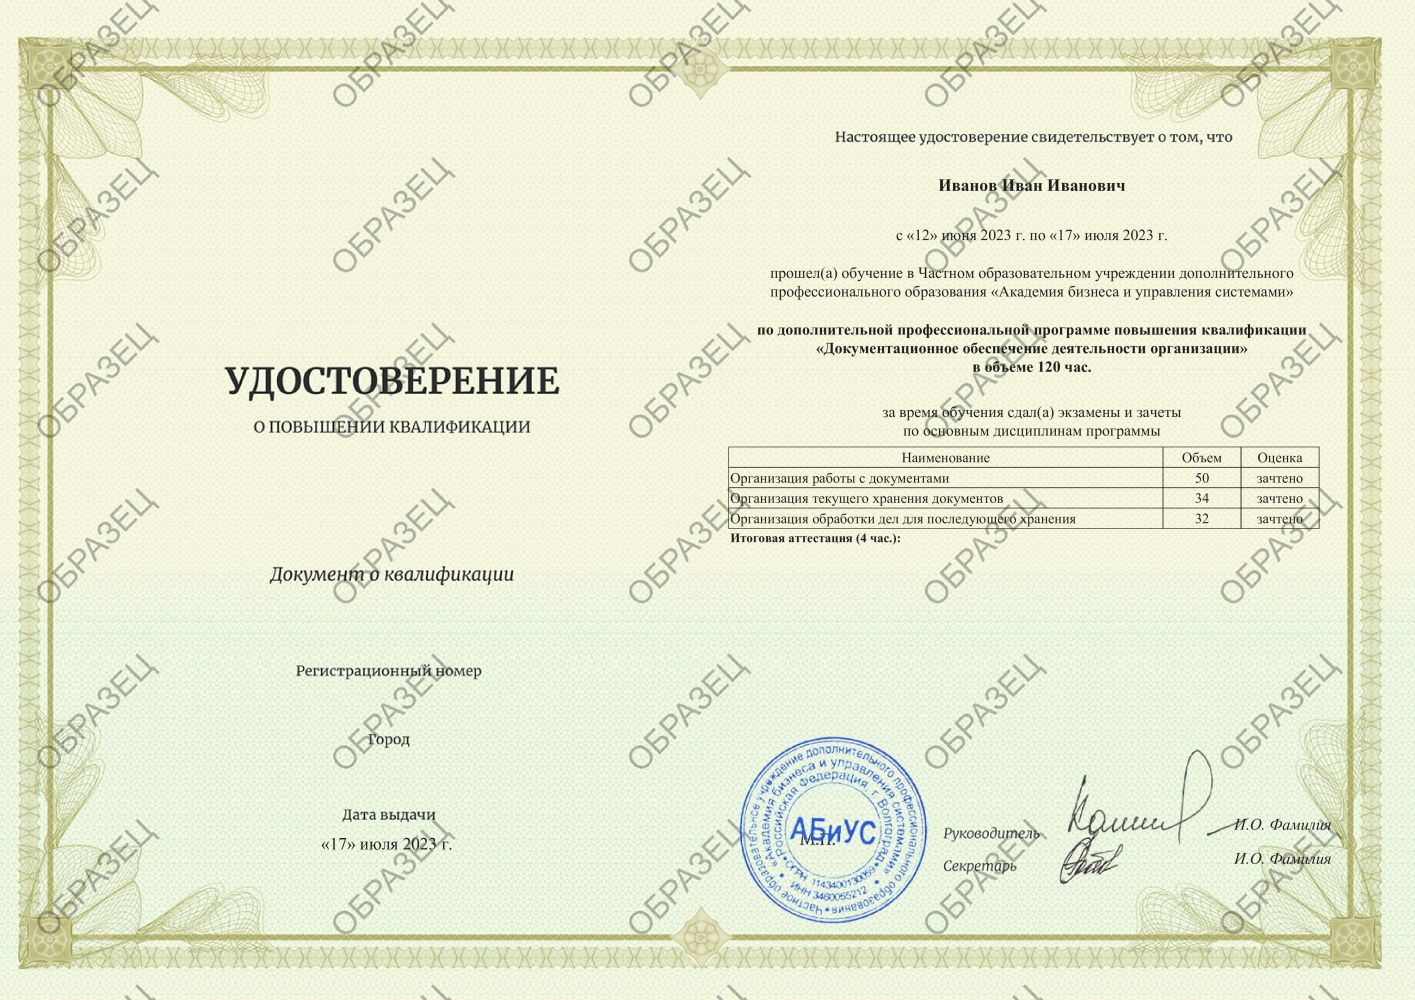 Удостоверение Документационное обеспечение деятельности организации 120 часов 4938 руб.